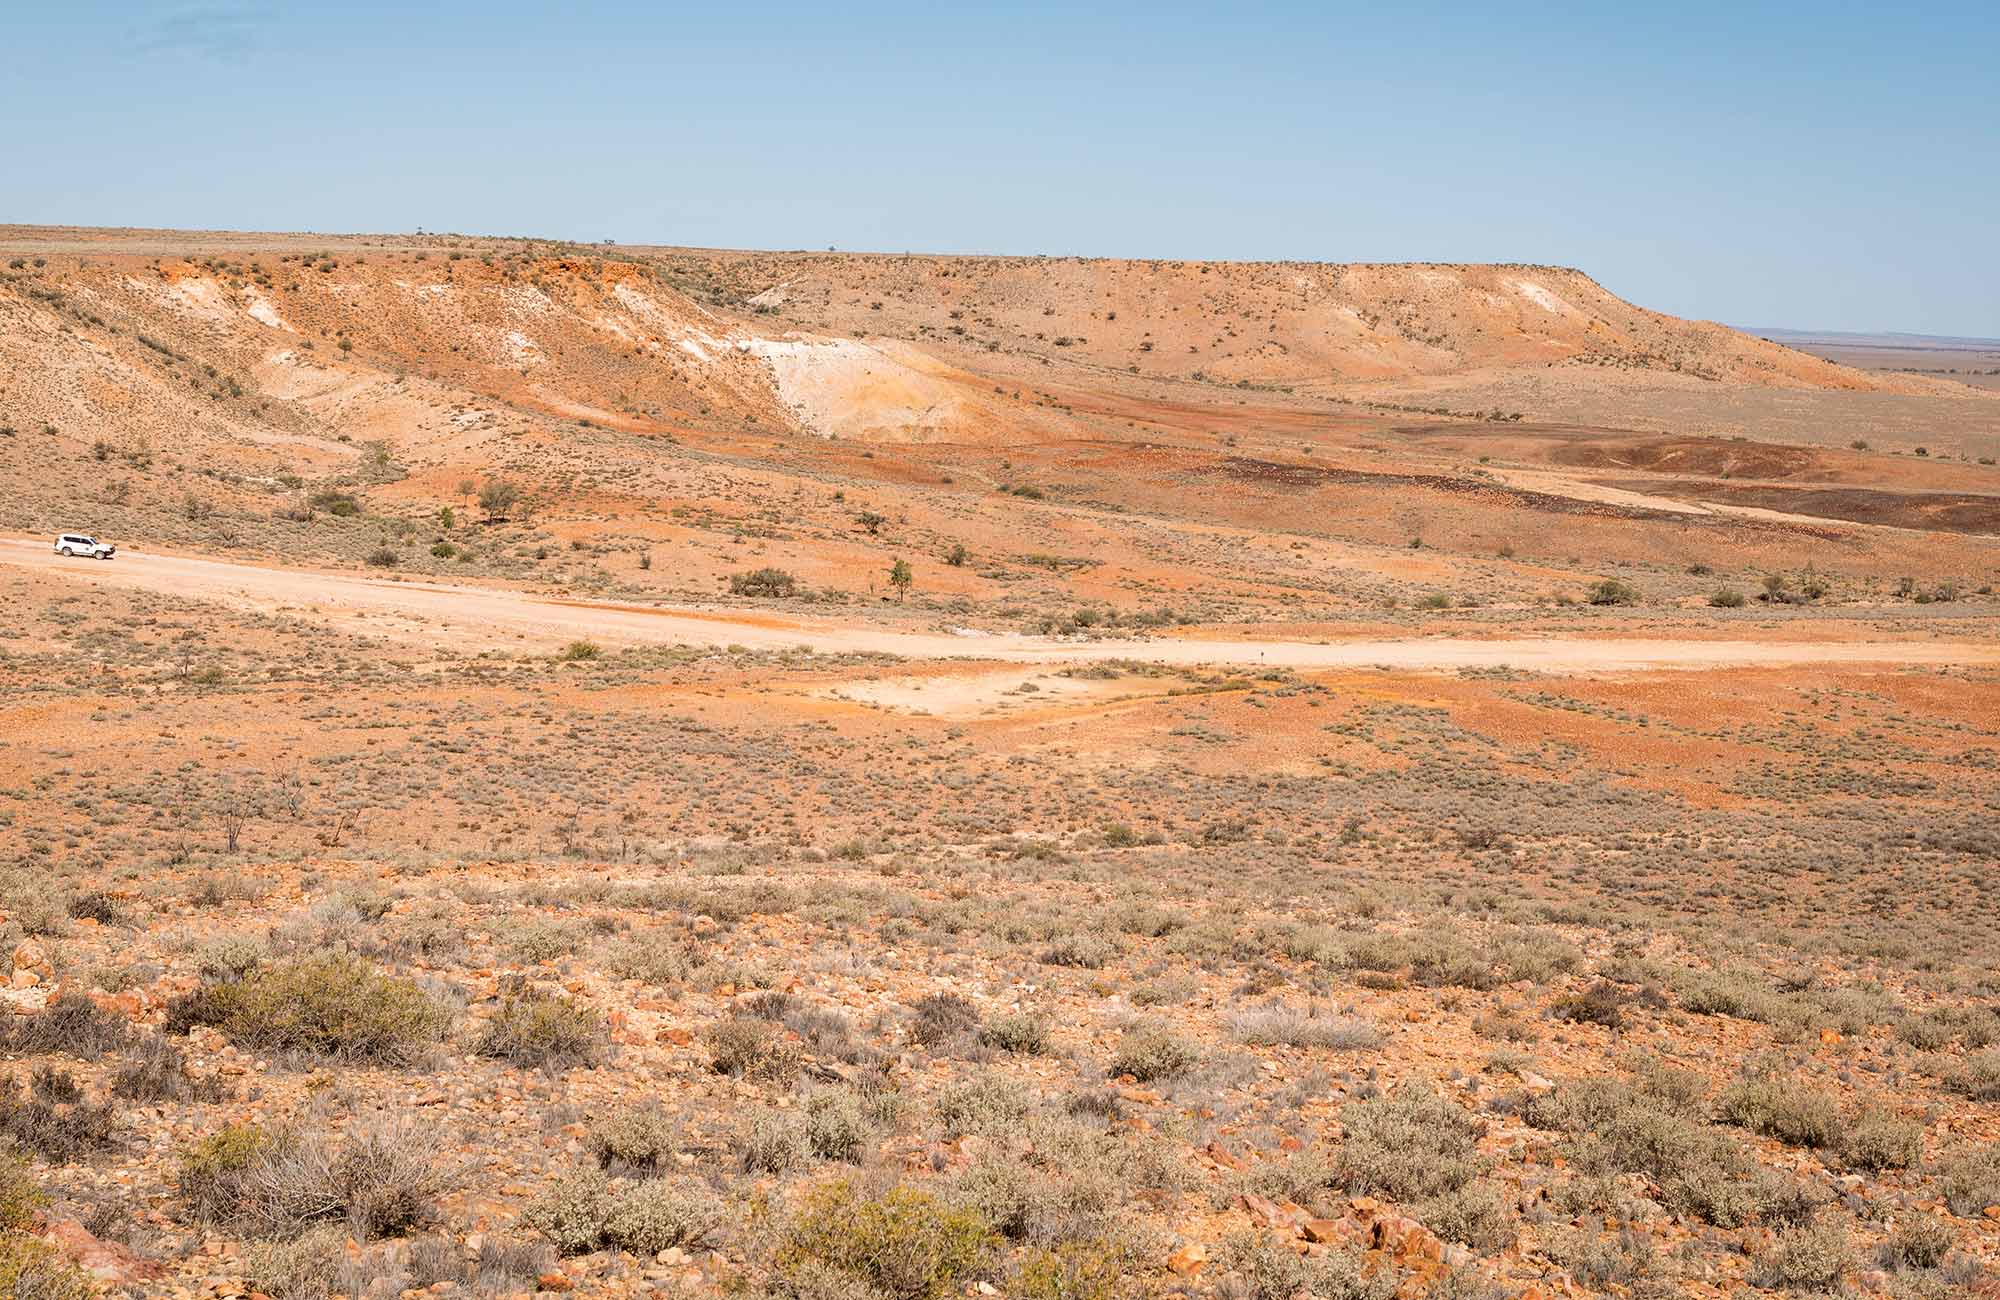 Outback landscape, Sturt National Park. Photo: John Spencer